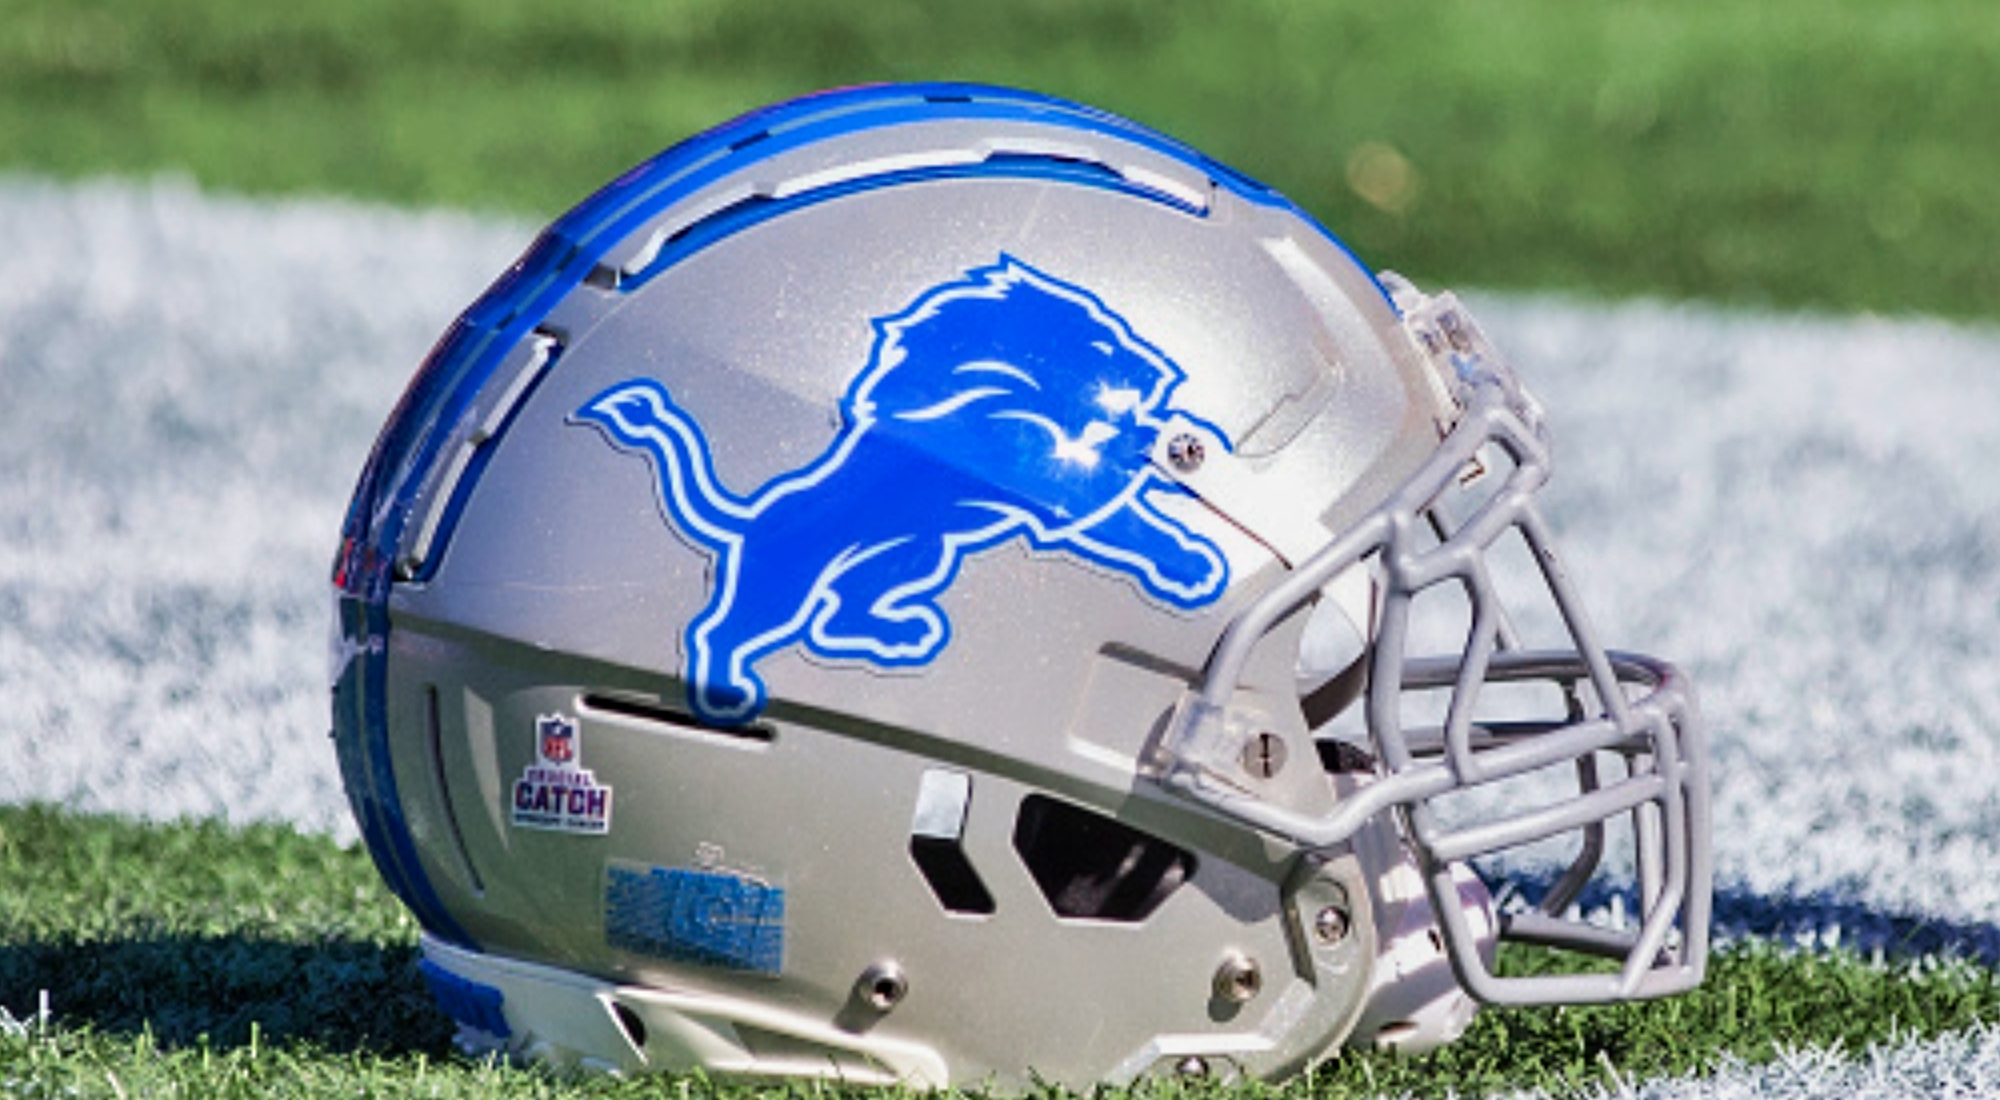 Detroit Lions new helmet: Team reveals alternate for 2023 season